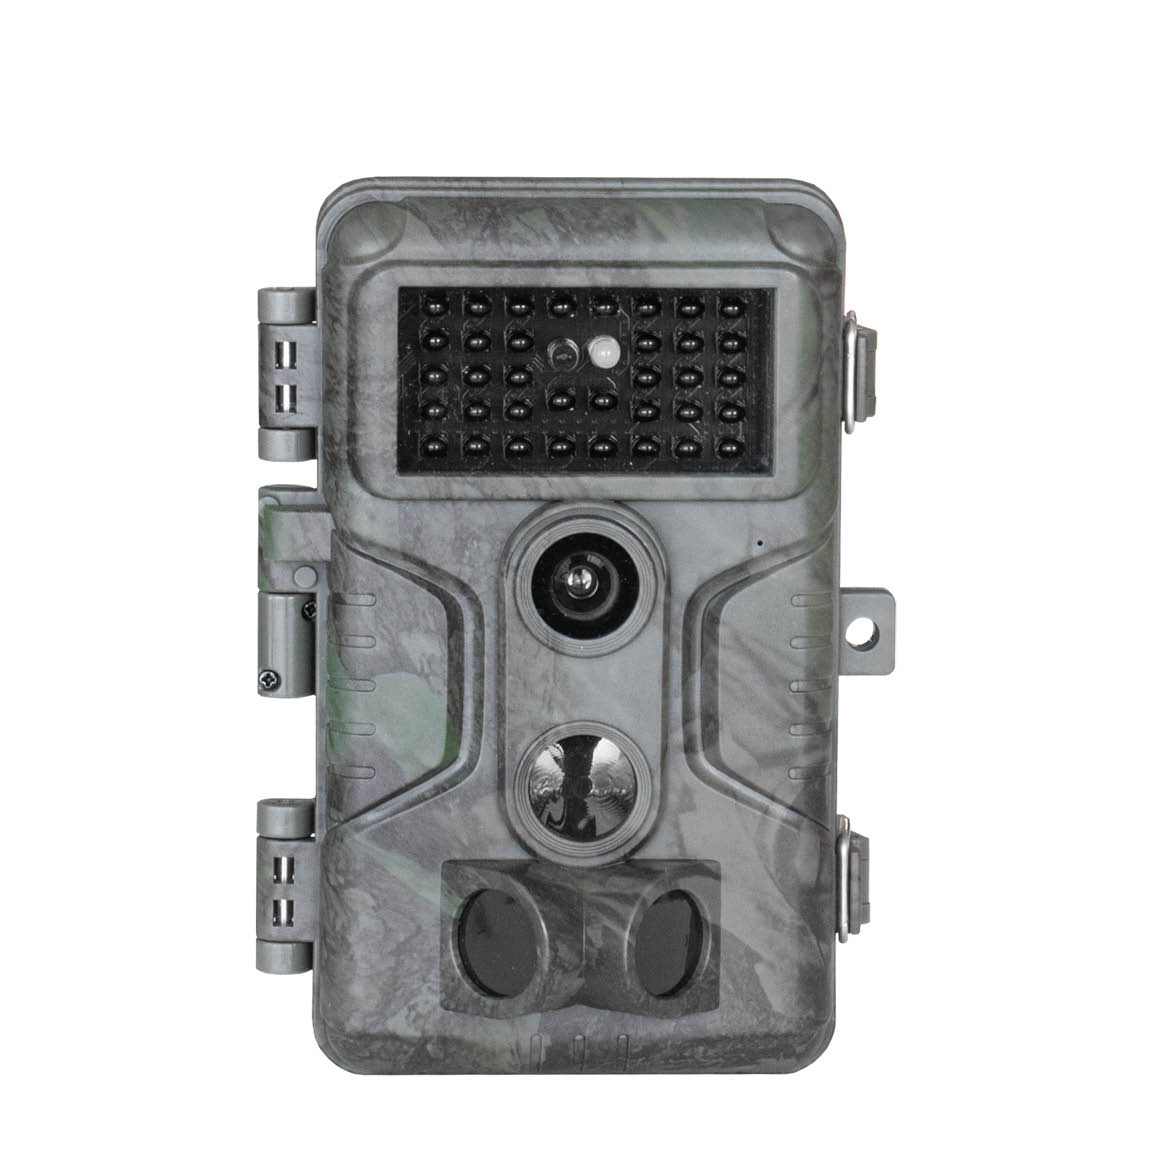 Pack 3 cámaras de caza GardePro A3S con pilas gratis